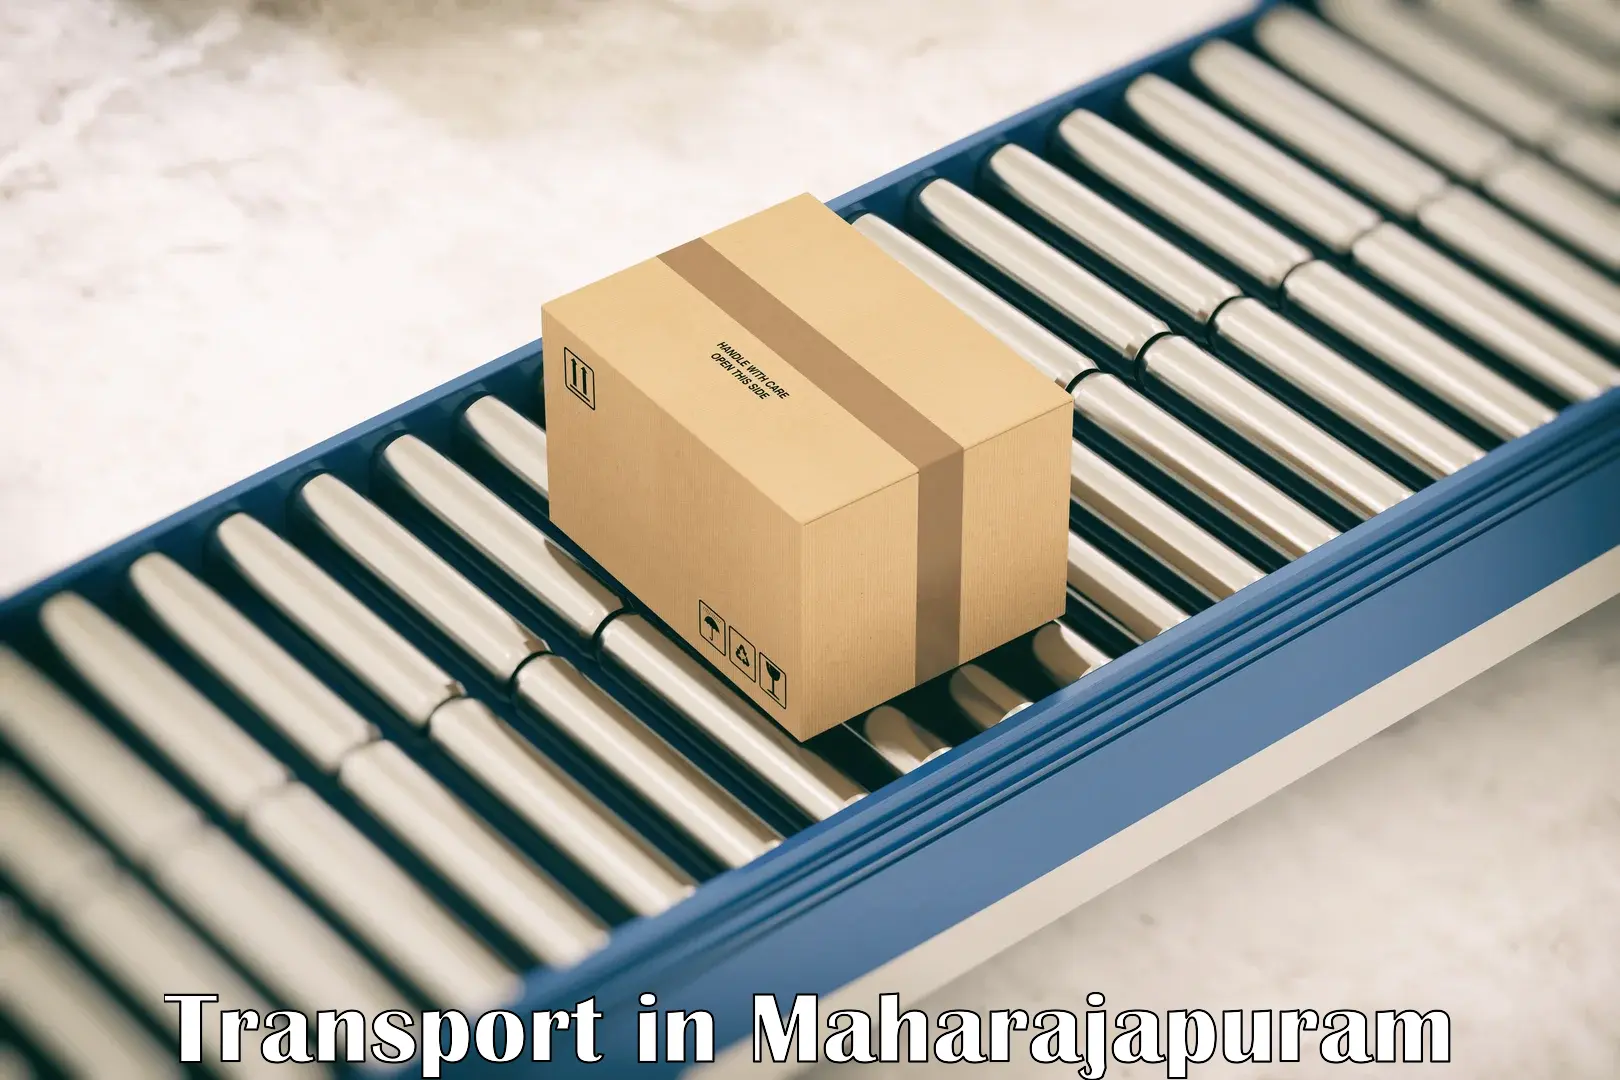 Container transport service in Maharajapuram